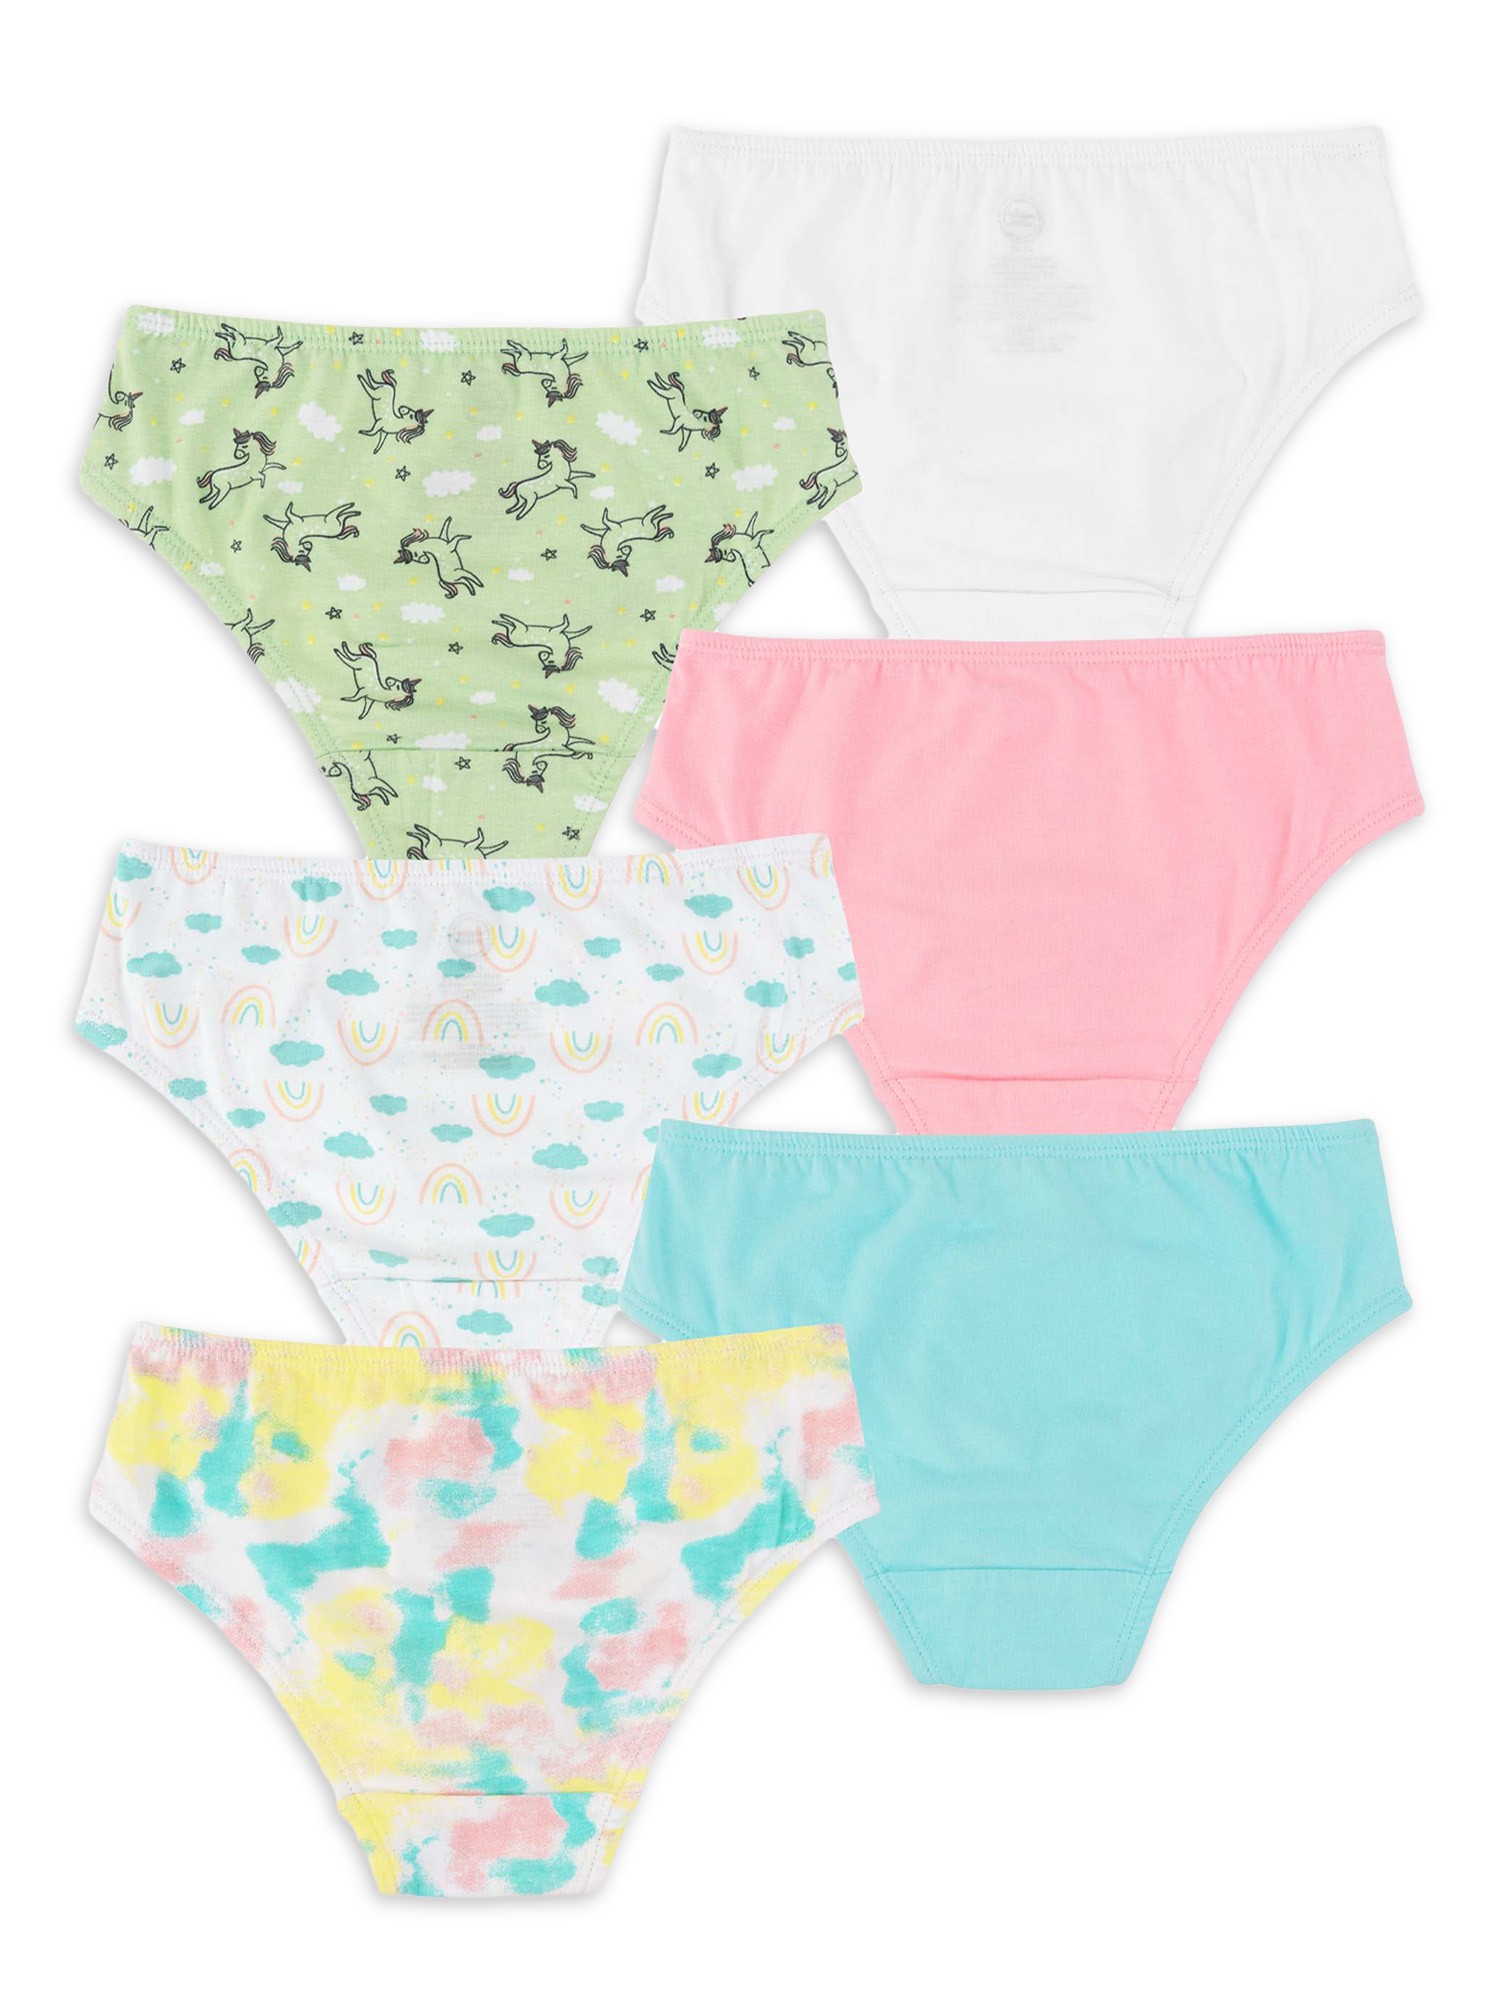 Minnie Toddler Girls Underwear, 6 Pack Sizes 2T-4T 